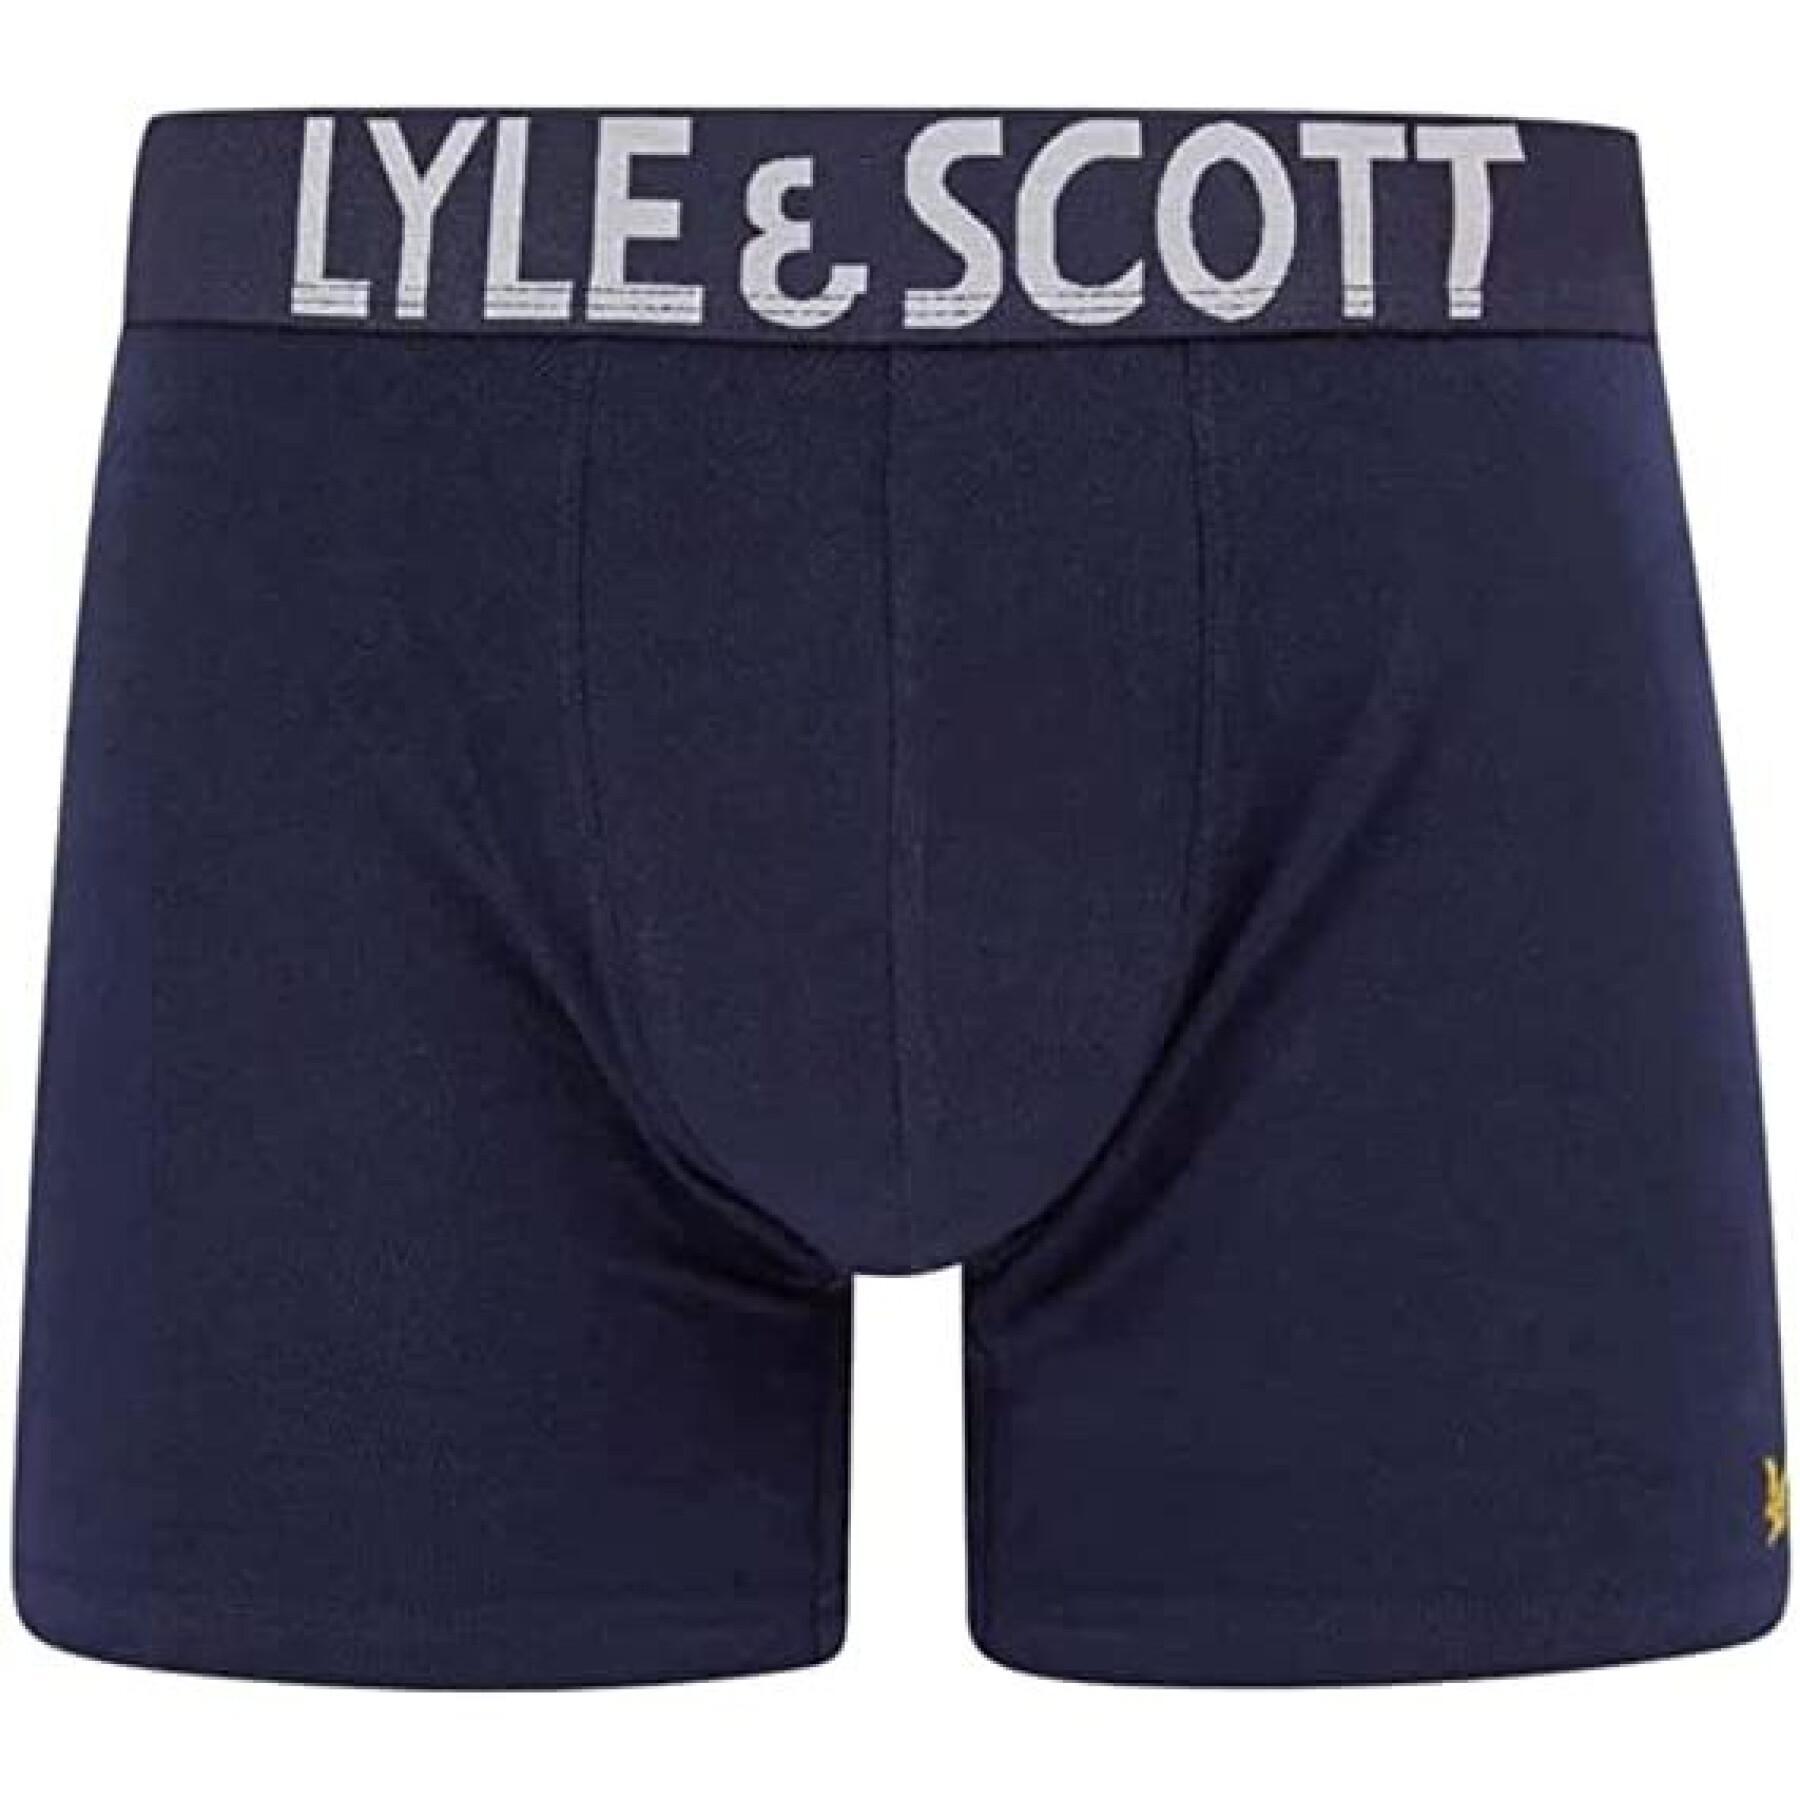 Förpackning med 3 boxershorts Lyle & Scott Daniel